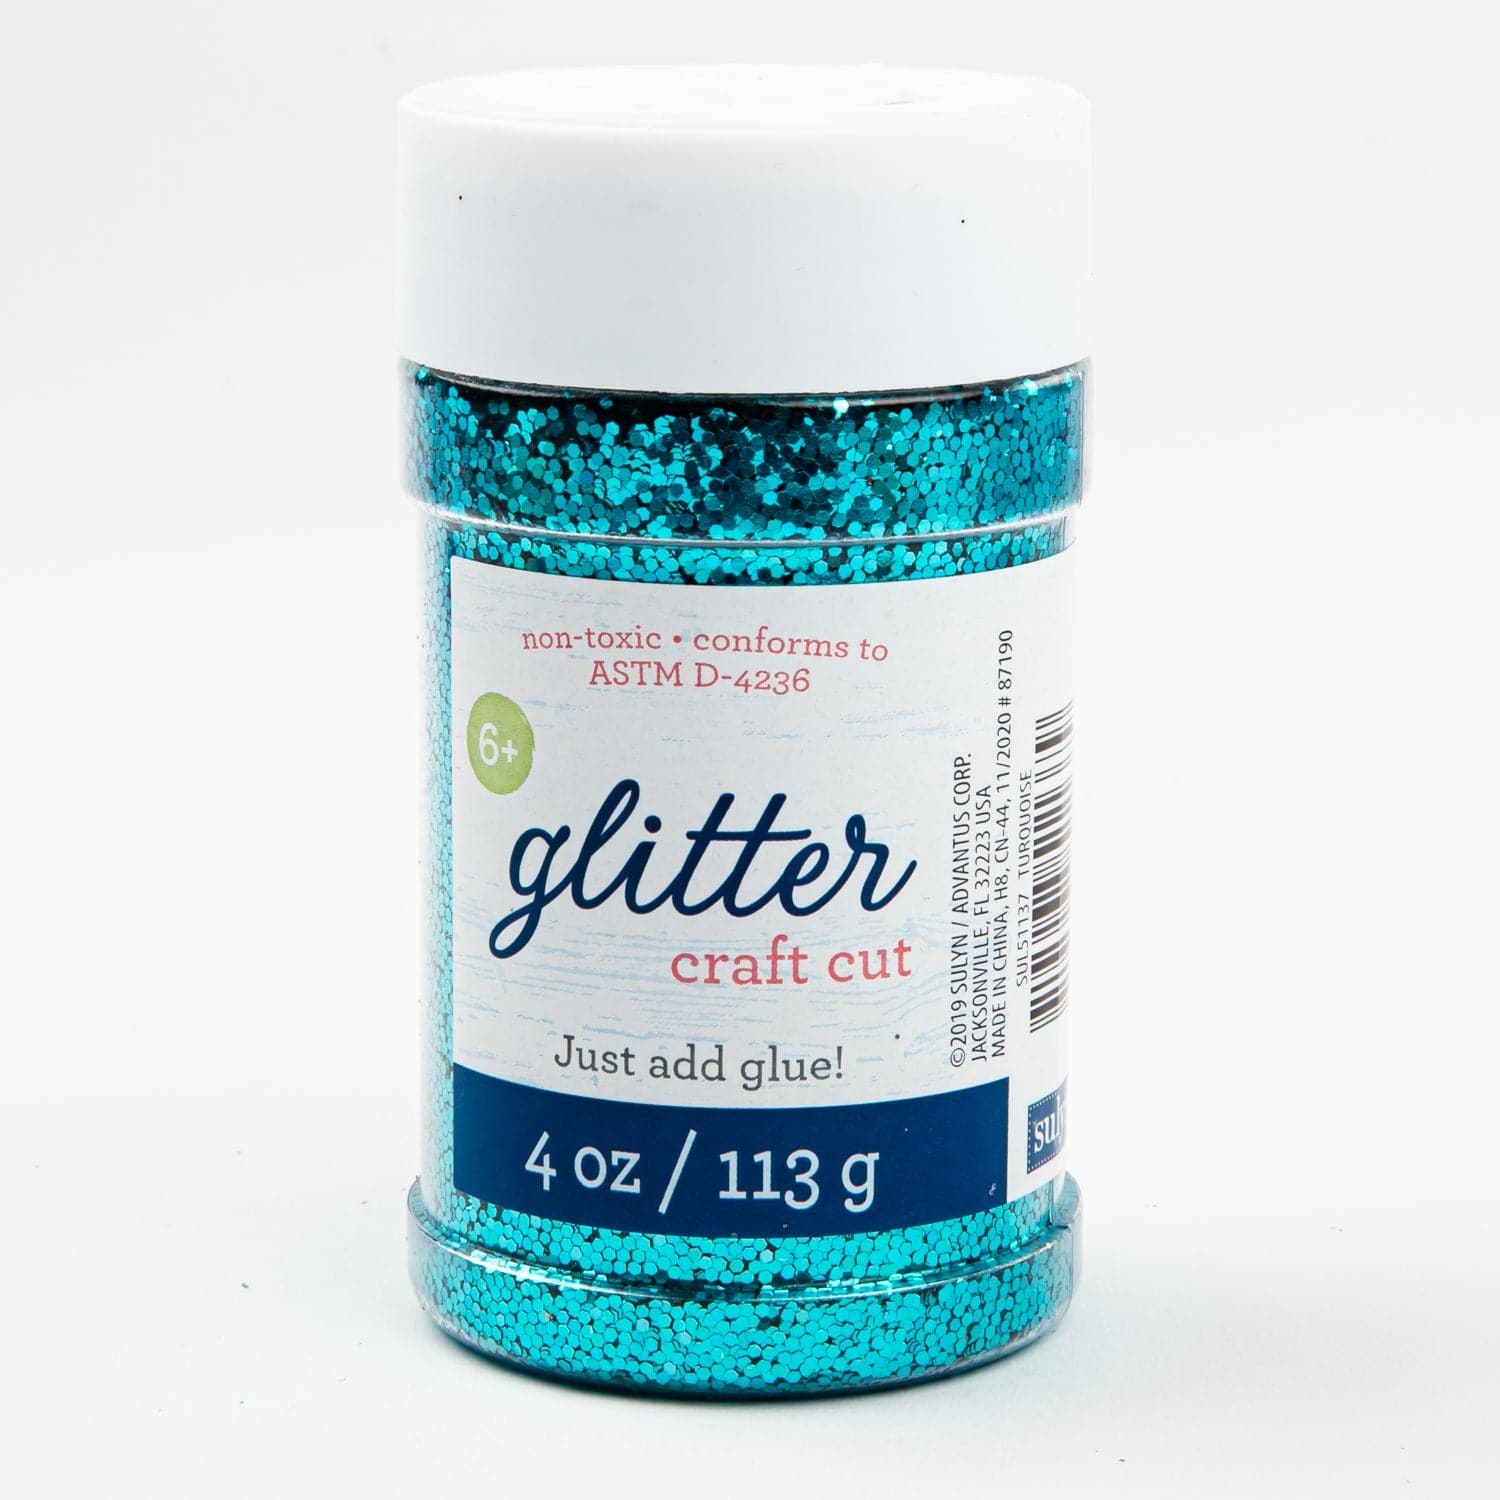 Sulyn Glitter 4oz-Metallic Turquoise